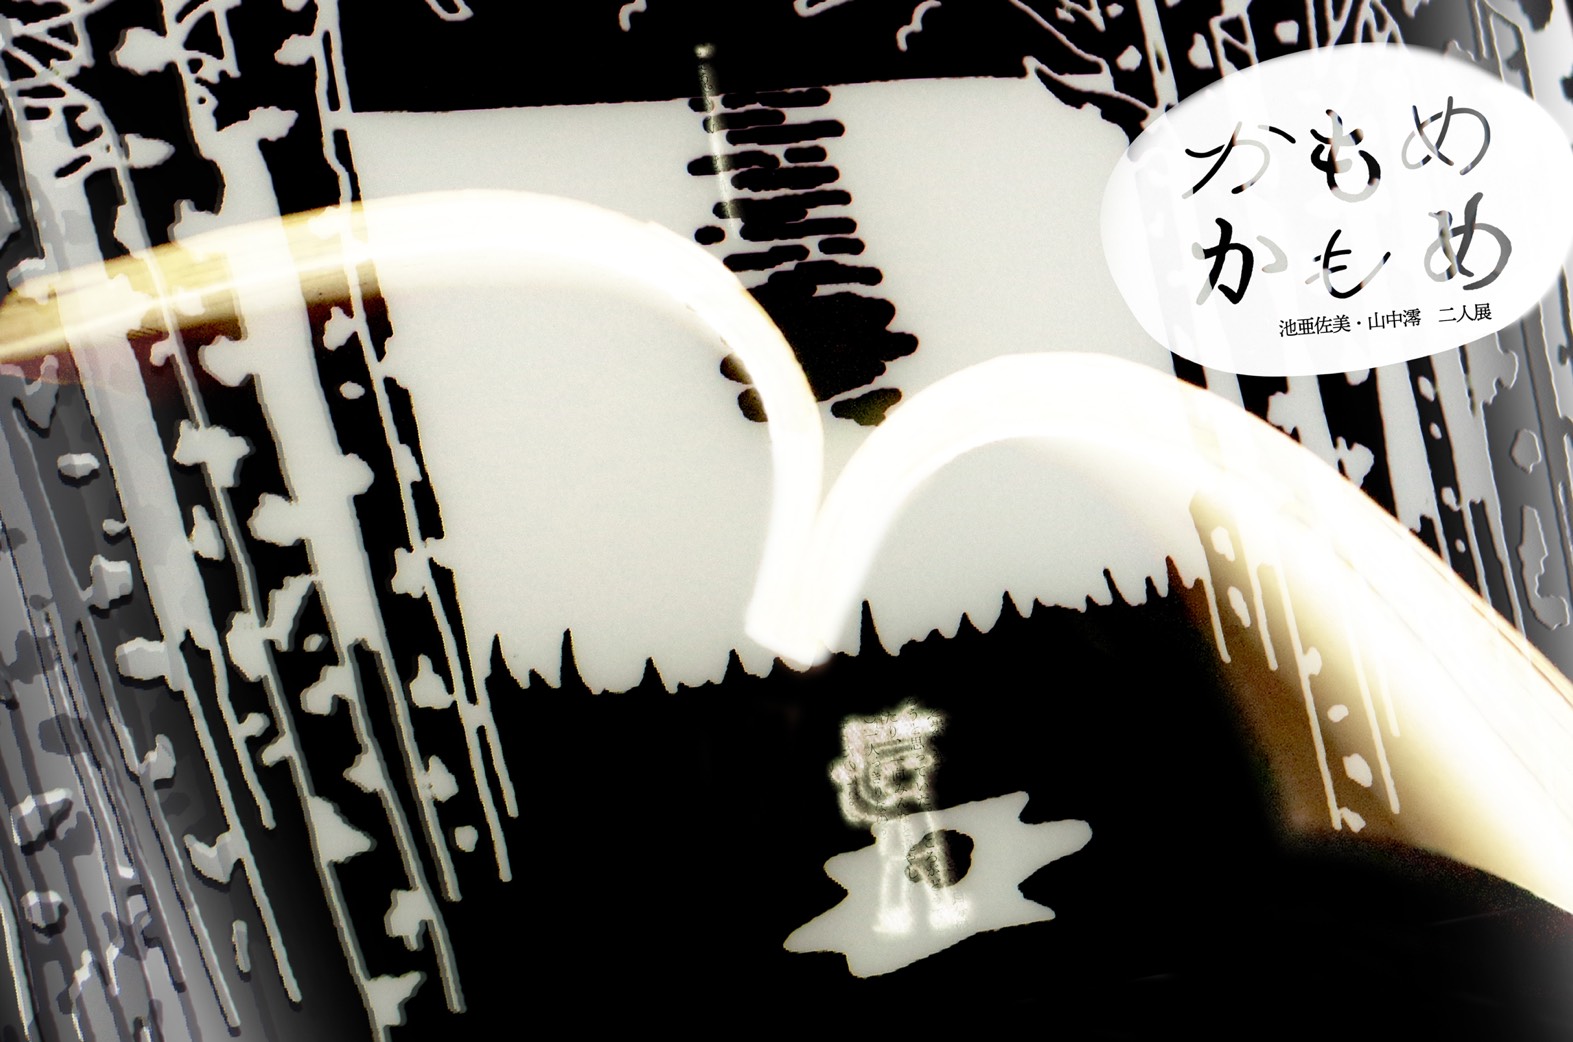 池亜佐美・山中澪 二人展「かもめ　かもめ」東京・王子のコ本や honkbooksにて開催中